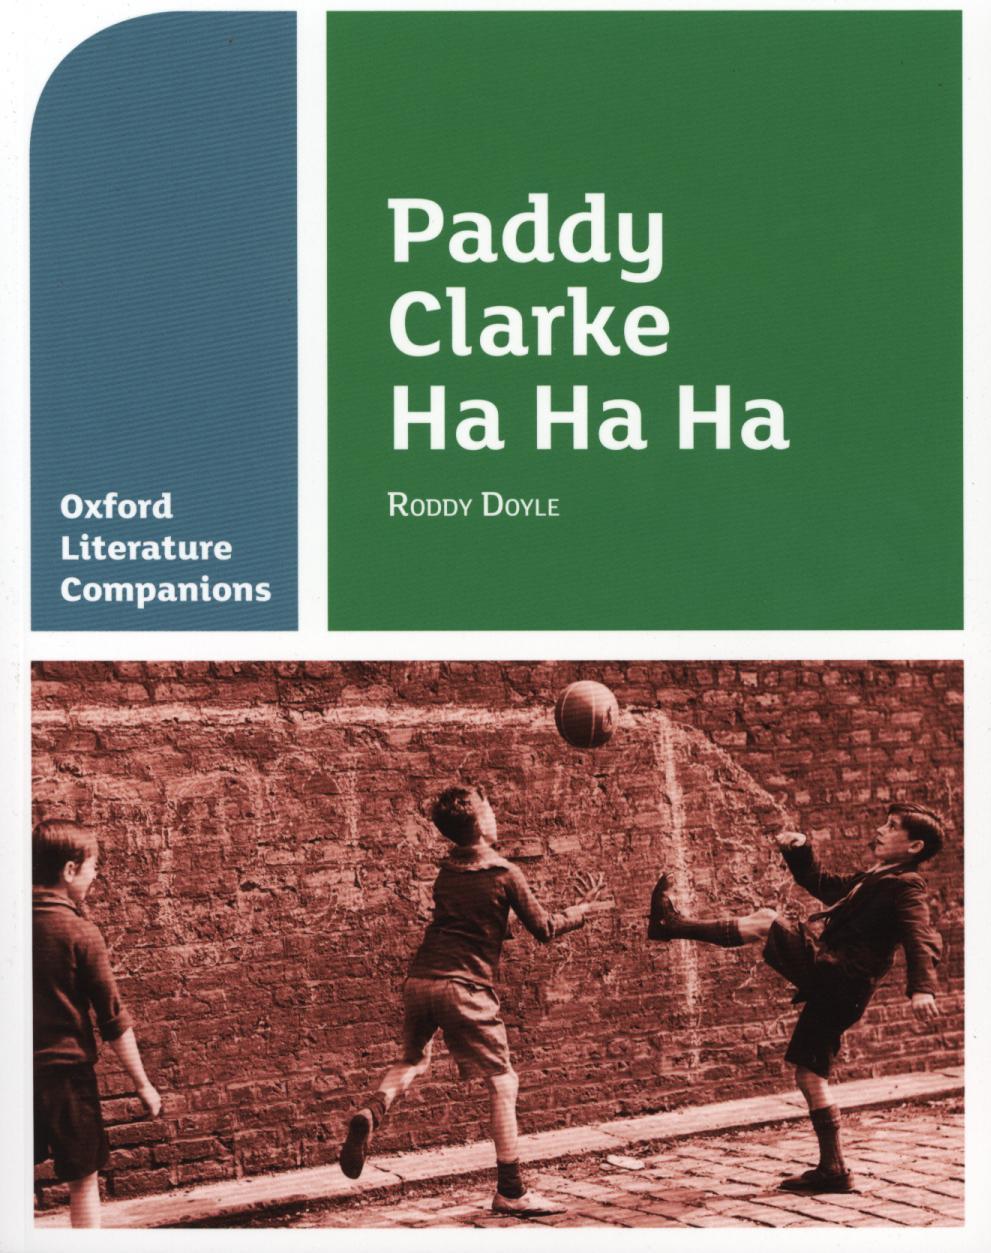 Oxford Literature Companions: Paddy Clarke Ha Ha Ha